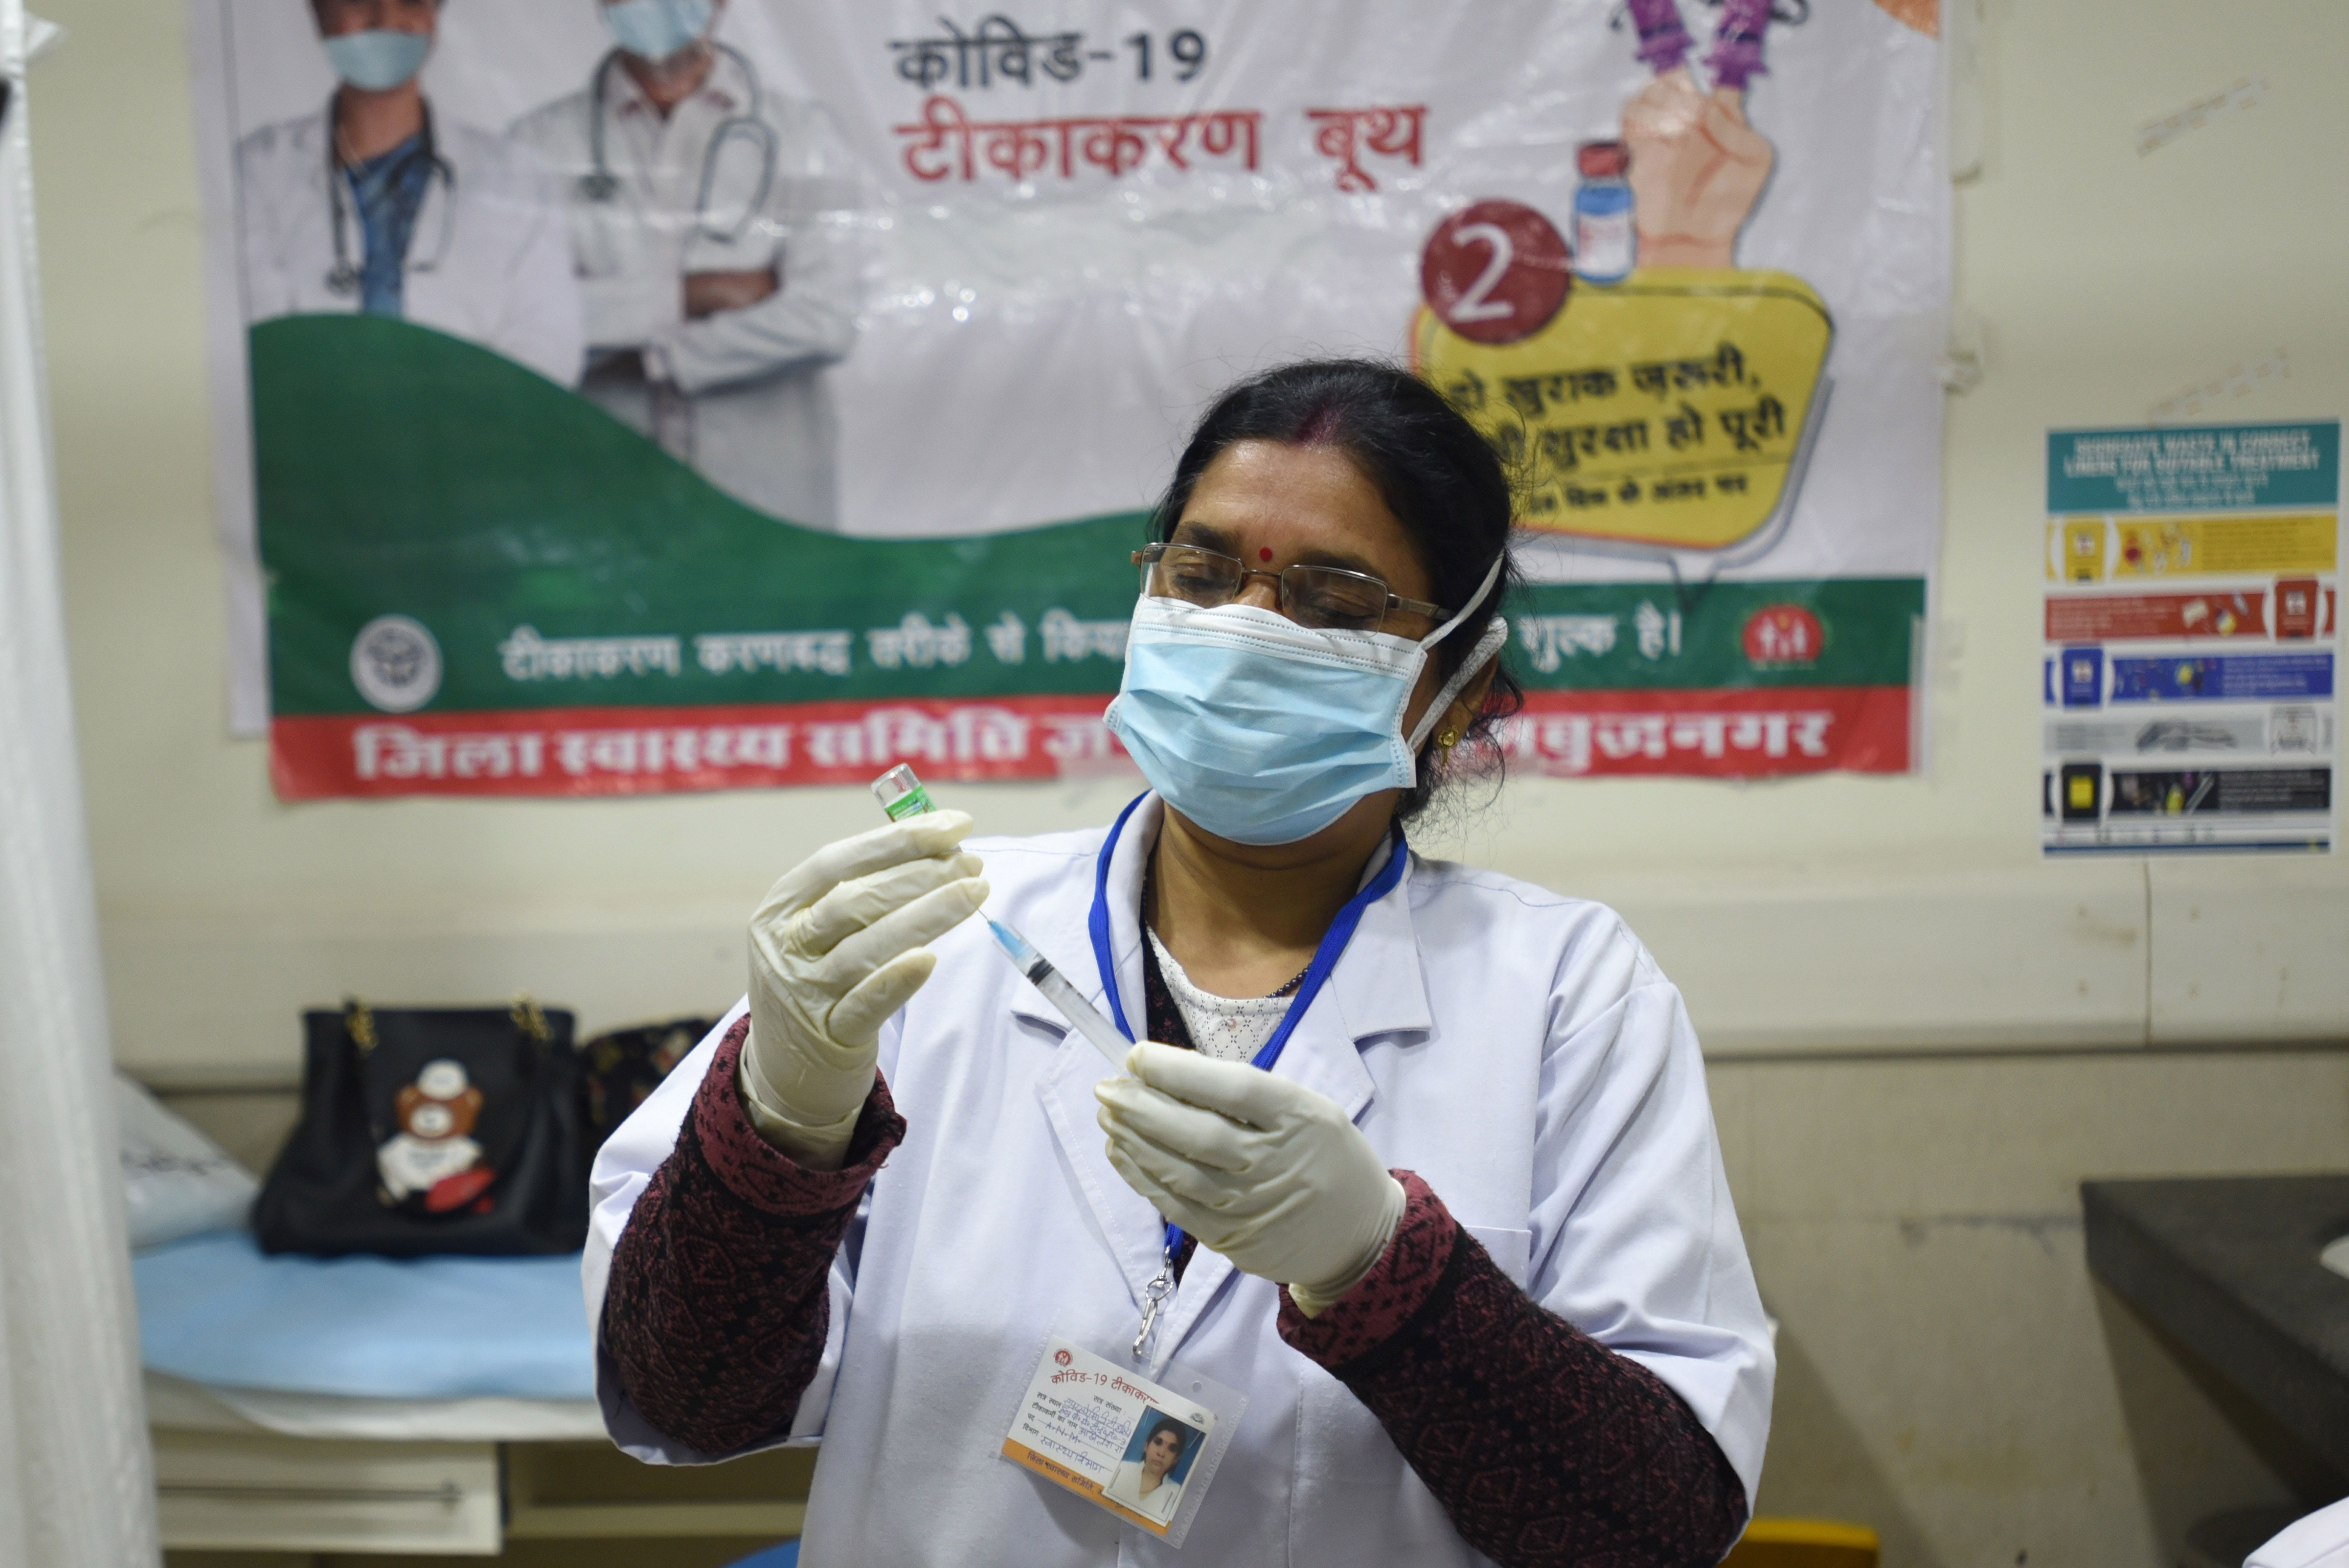 Скандал в Индии: тысячи людей стали участниками теста, думая, что получают вакцину против COVID